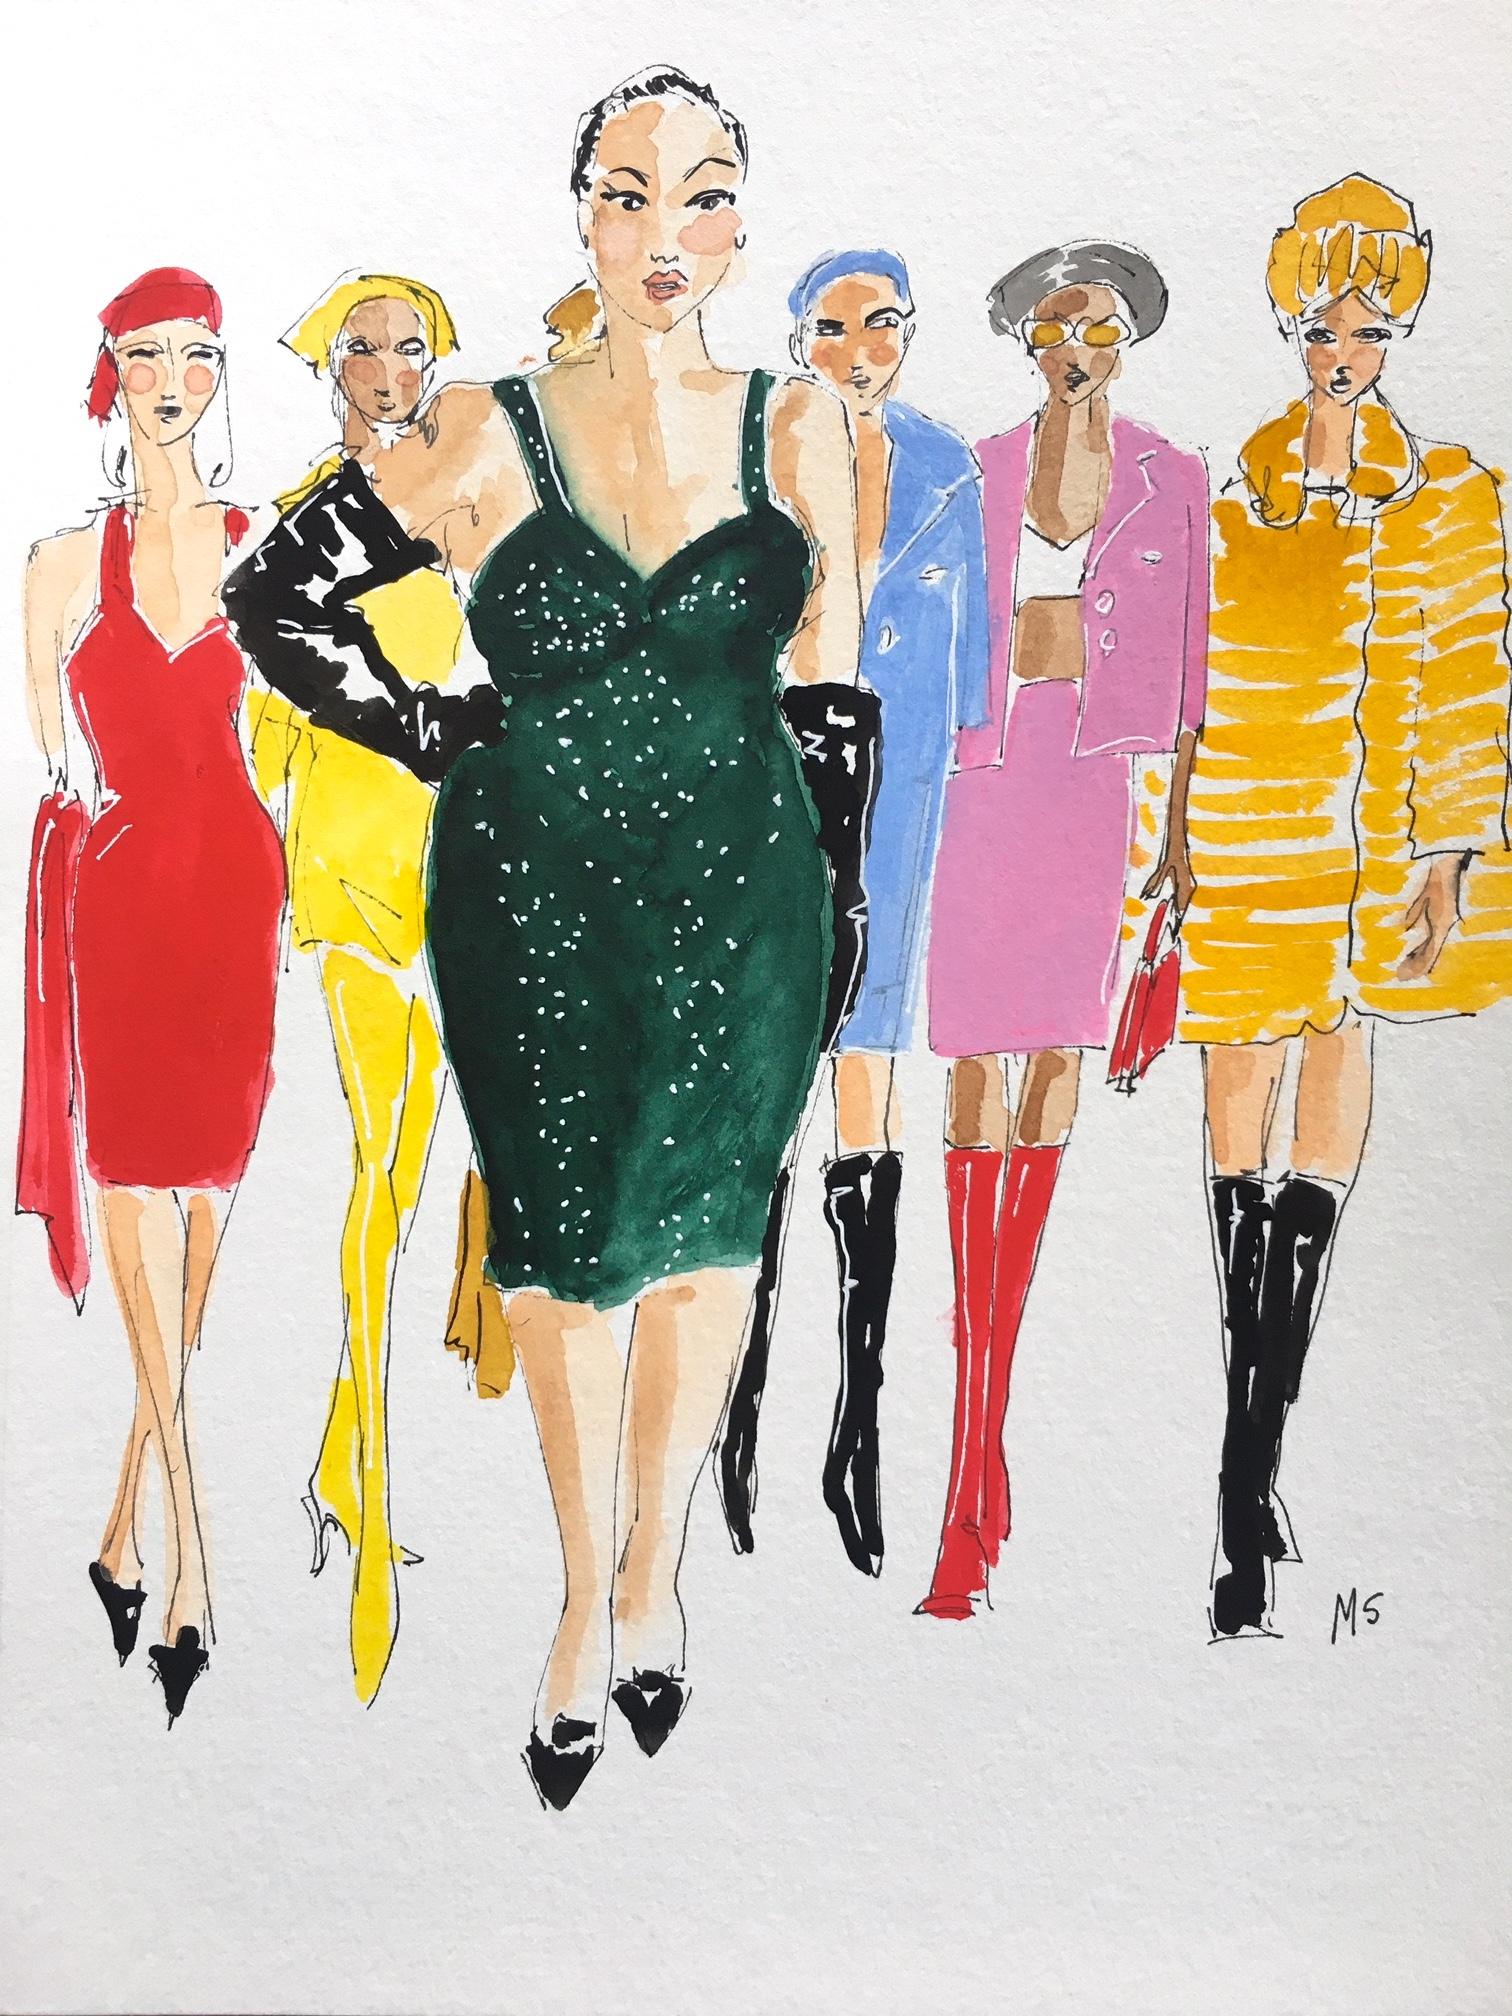 Marc Jacobs - Modèles de défilé de mode d'automne, dessin de mode à l'aquarelle sur papier - Art de Manuel Santelices